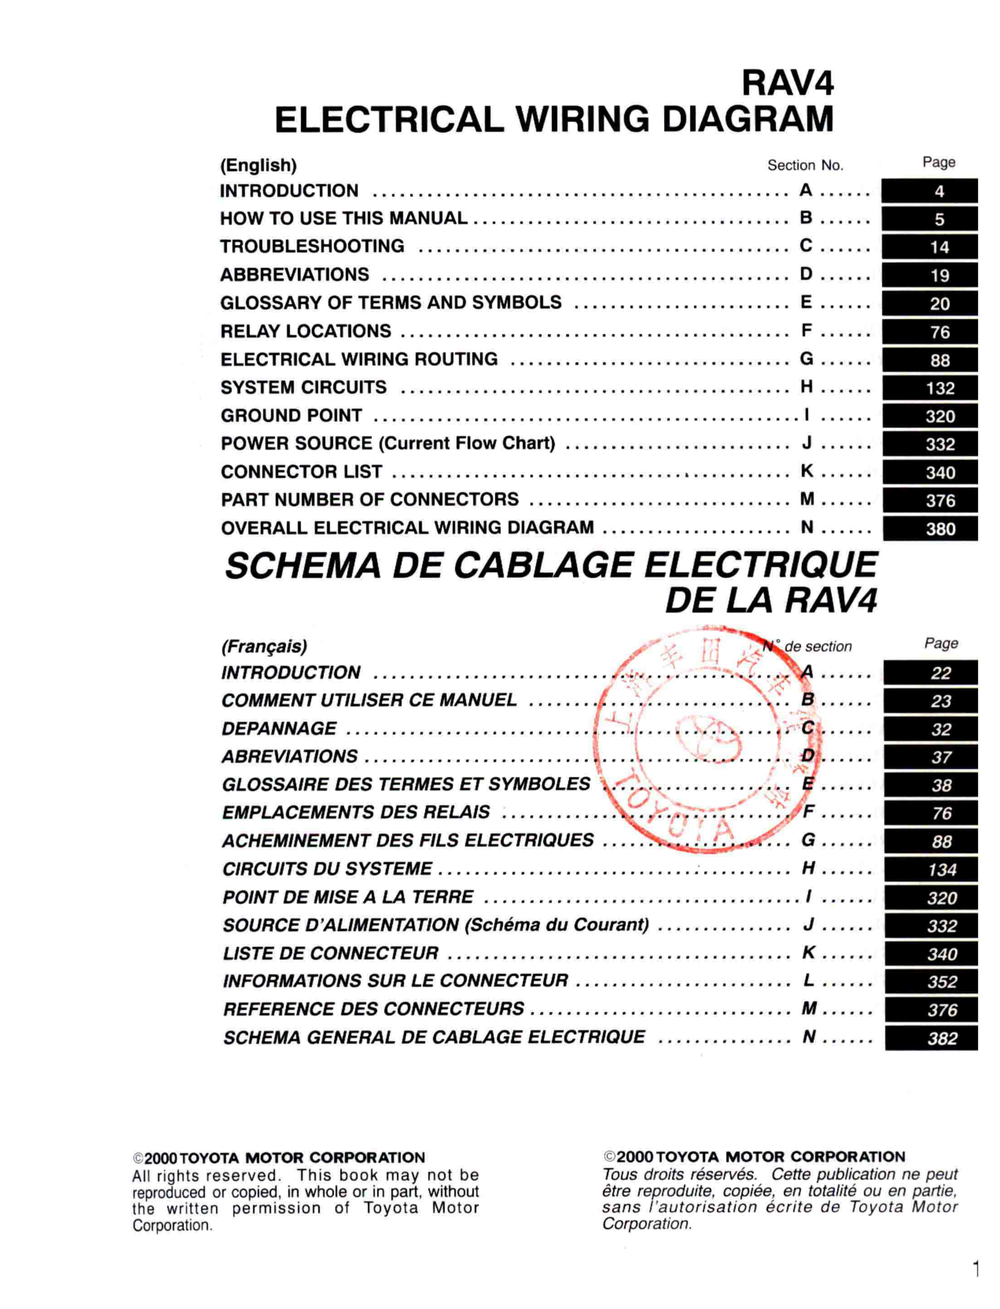 2000丰田RAV4电路图册 英.pdf-第5页.png